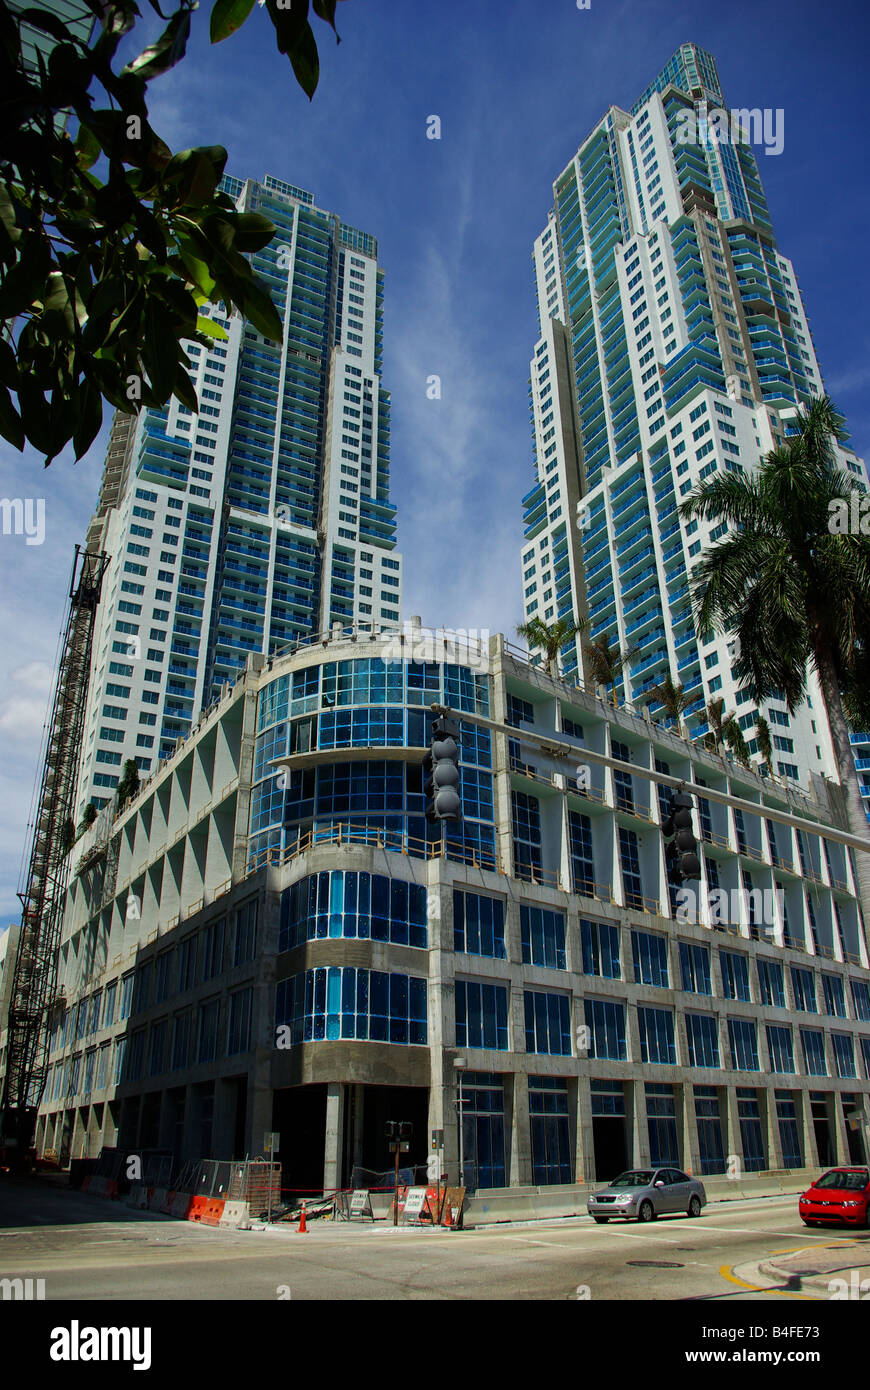 Un grand immeuble de condos en construction dans le centre-ville de Miami, Floride Banque D'Images